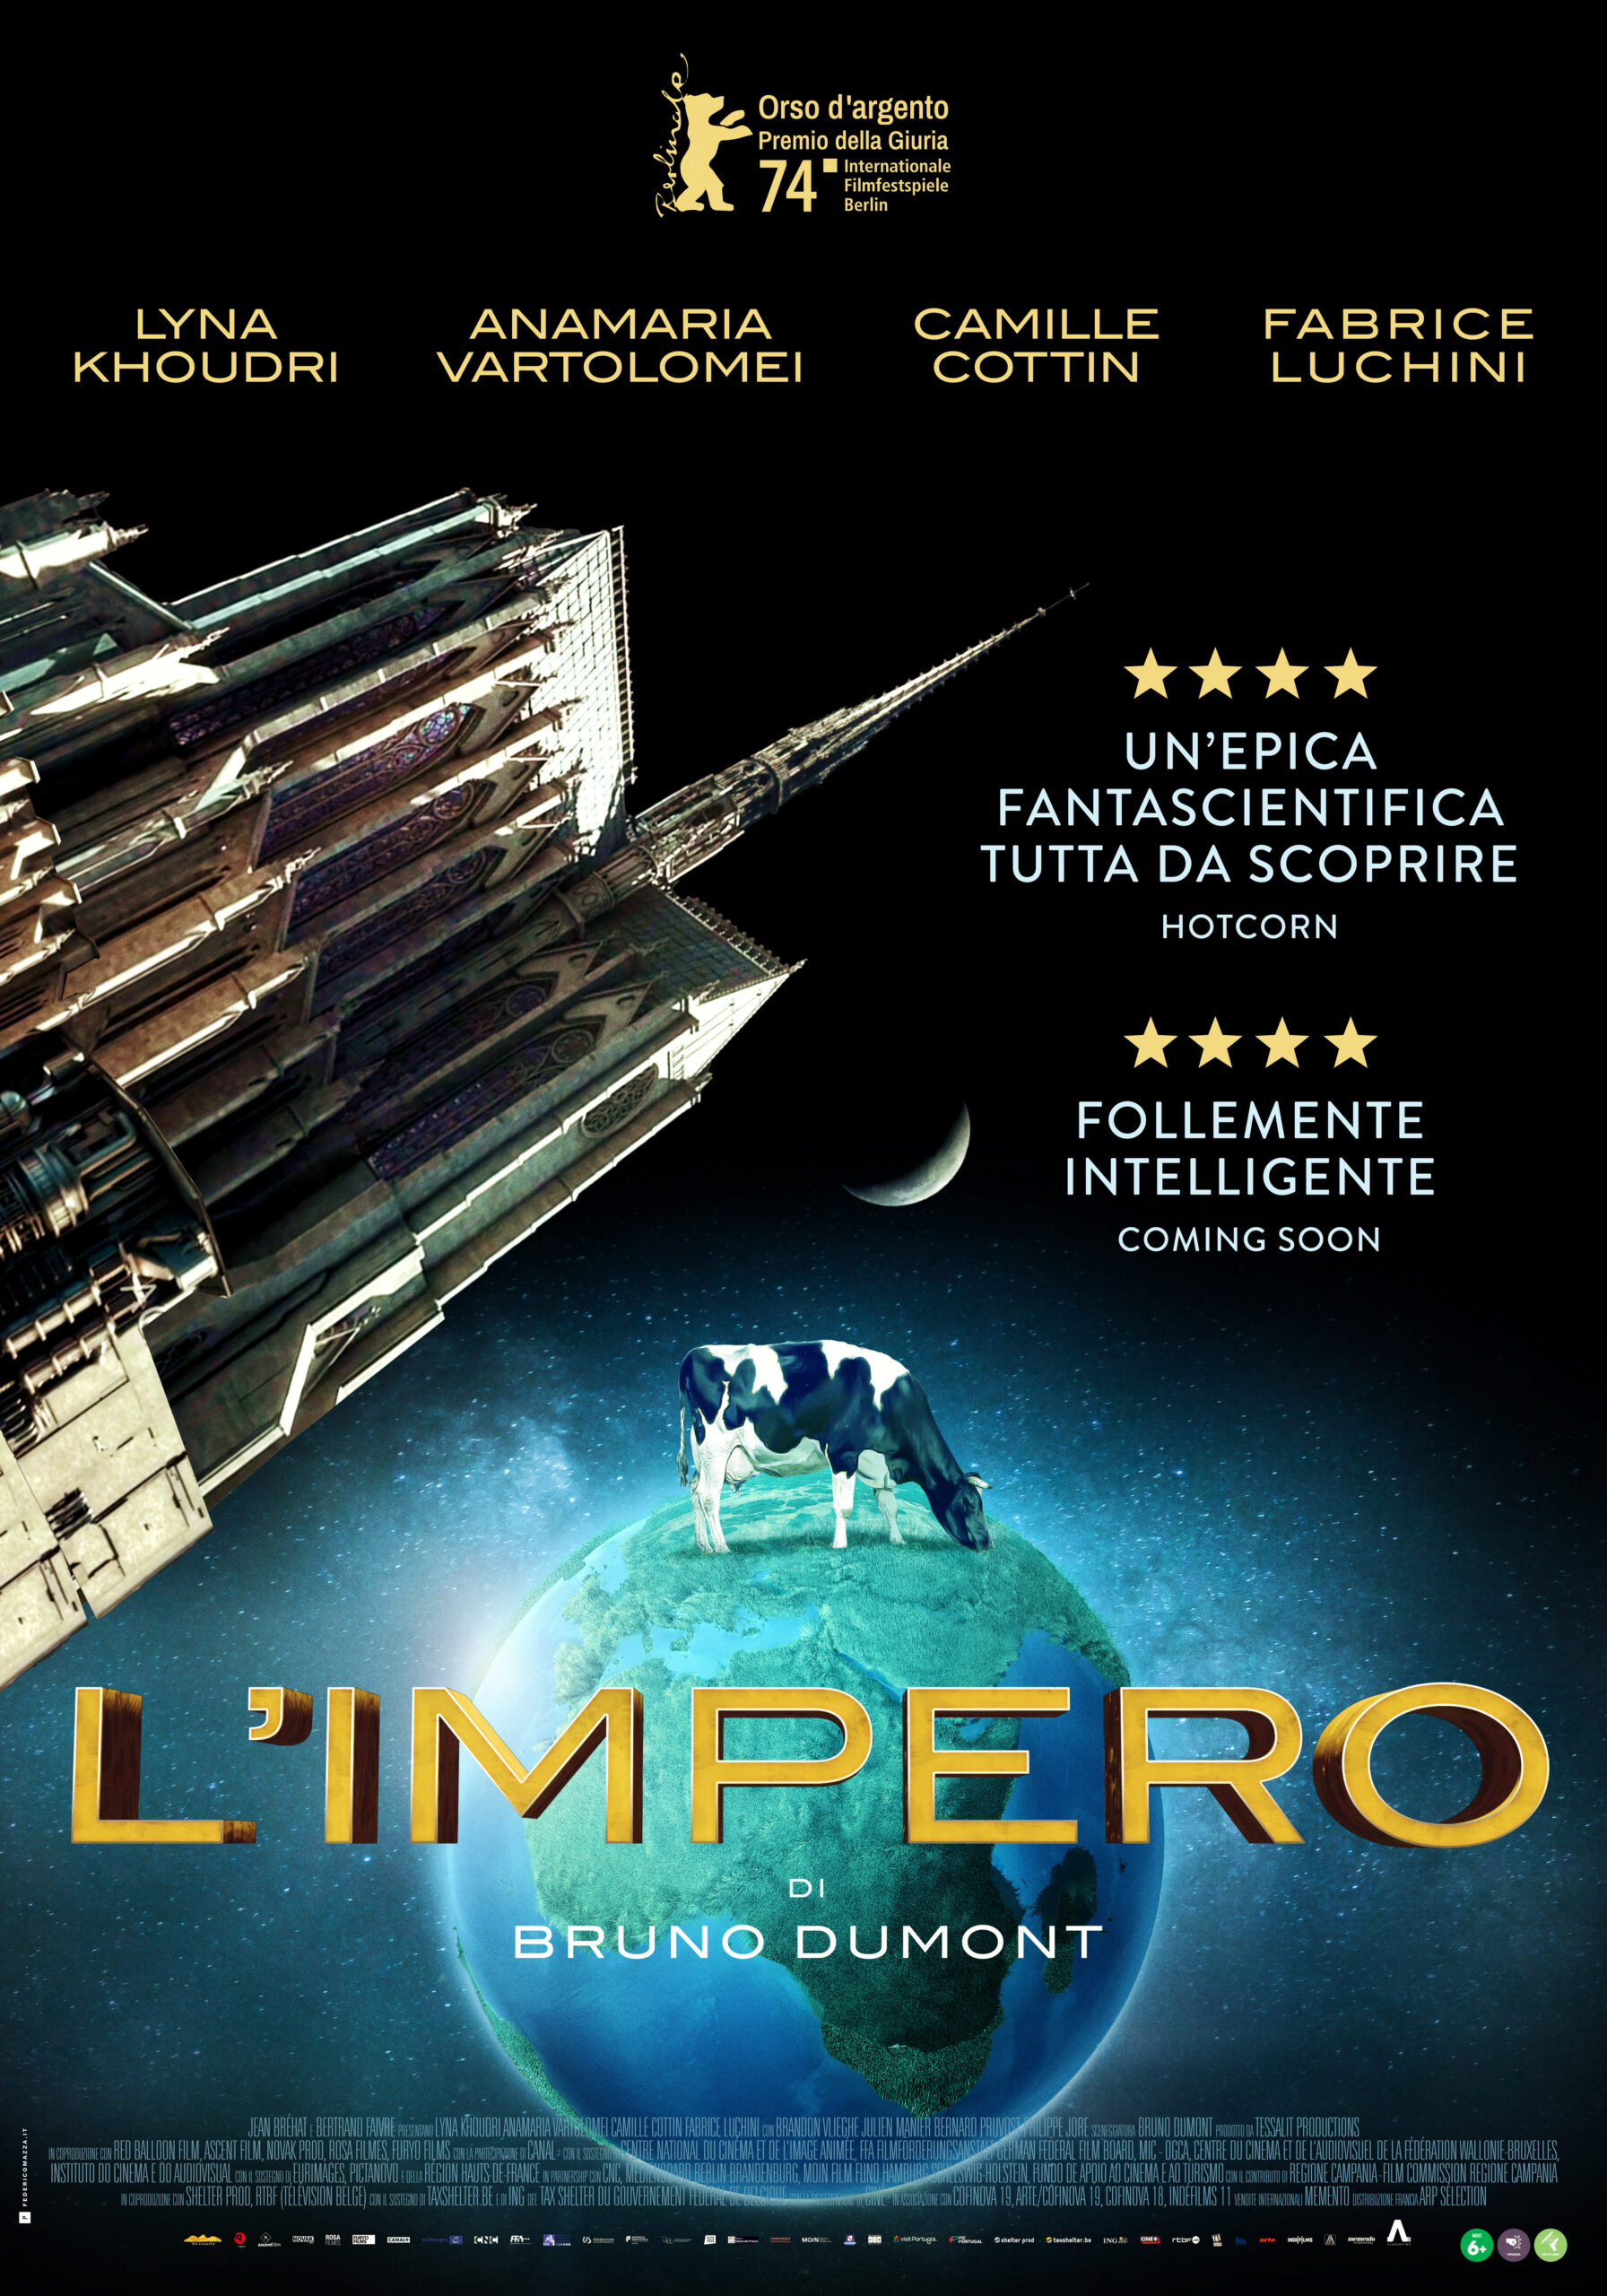 L’impero: dal 13 giugno nelle sale lo sci-fi di Bruno Dumont